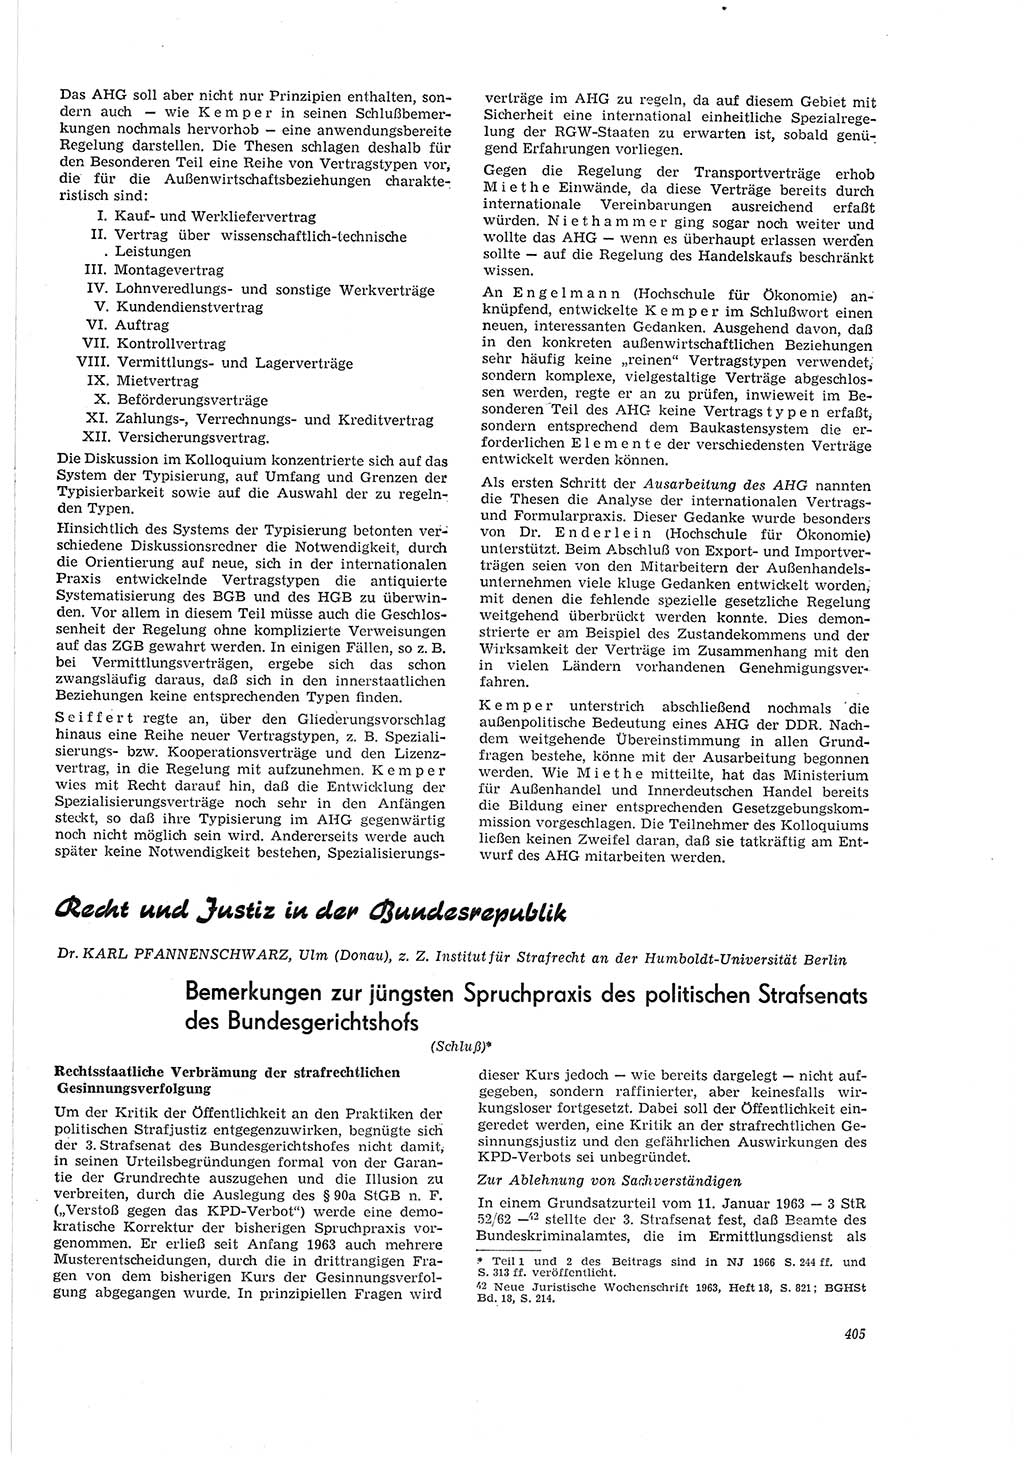 Neue Justiz (NJ), Zeitschrift für Recht und Rechtswissenschaft [Deutsche Demokratische Republik (DDR)], 20. Jahrgang 1966, Seite 405 (NJ DDR 1966, S. 405)